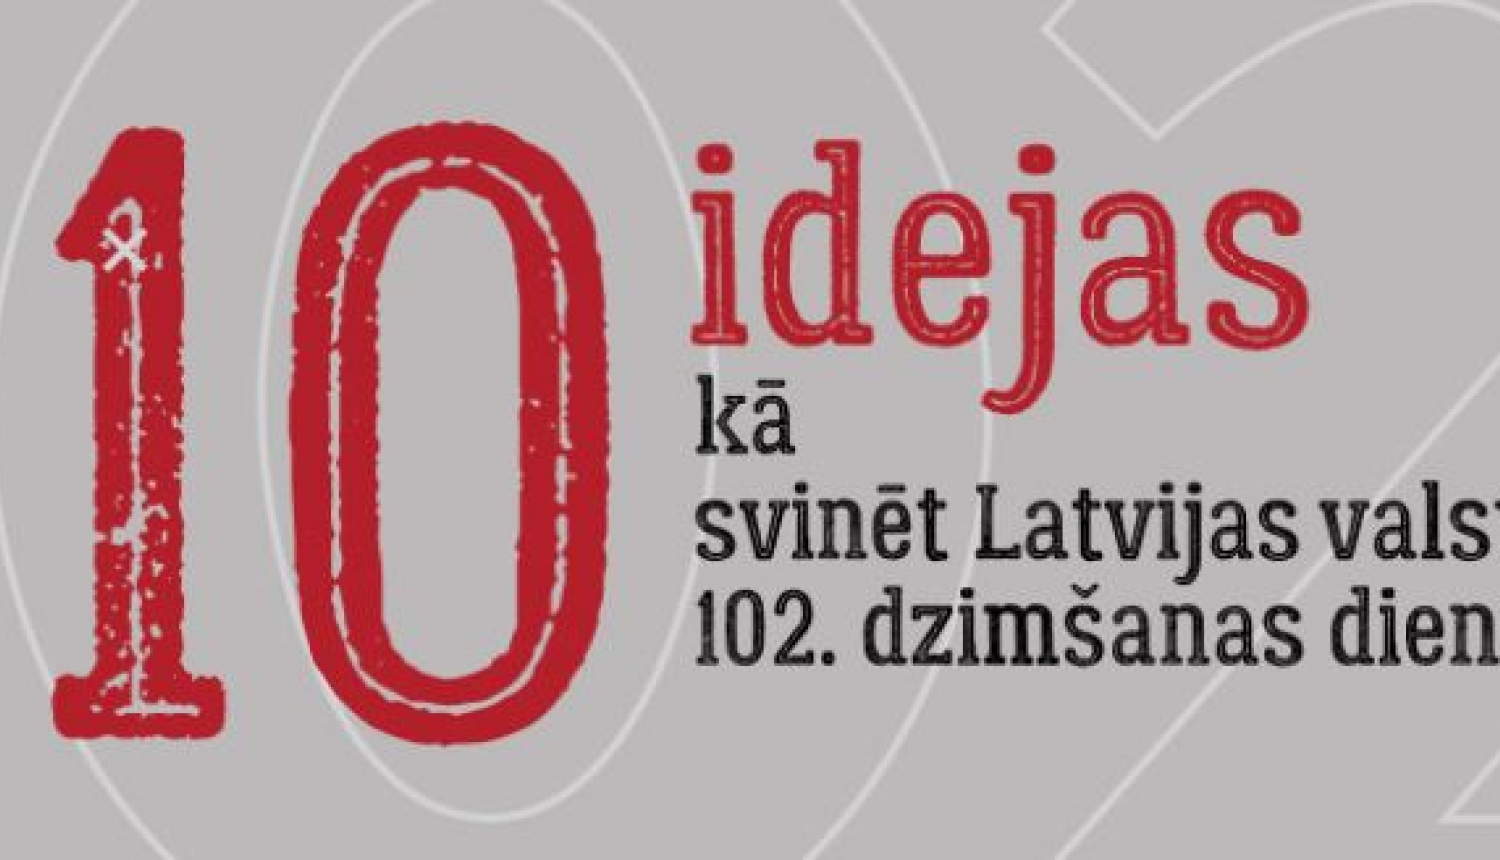 10 idejas svetku svinesanai LV100